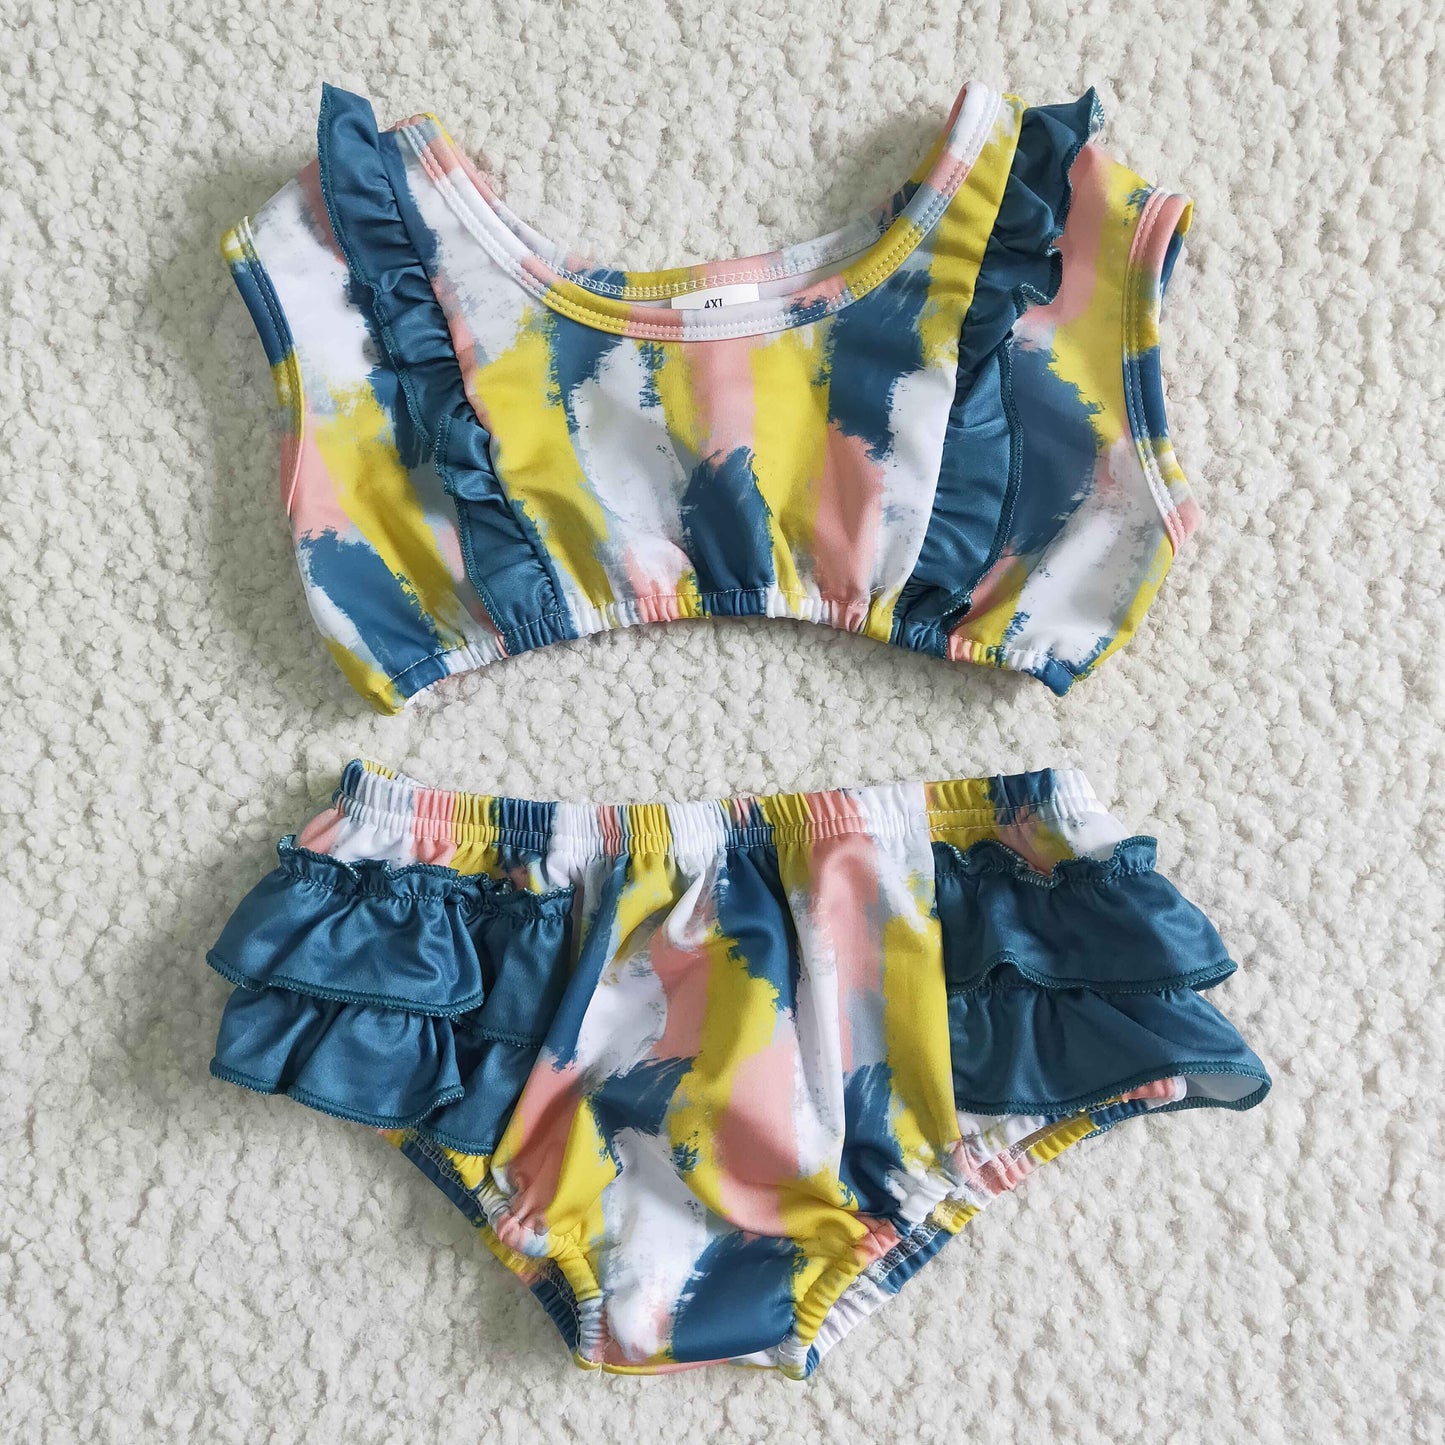 Sleeveless stripe ruffle baby girls summer swimsuit